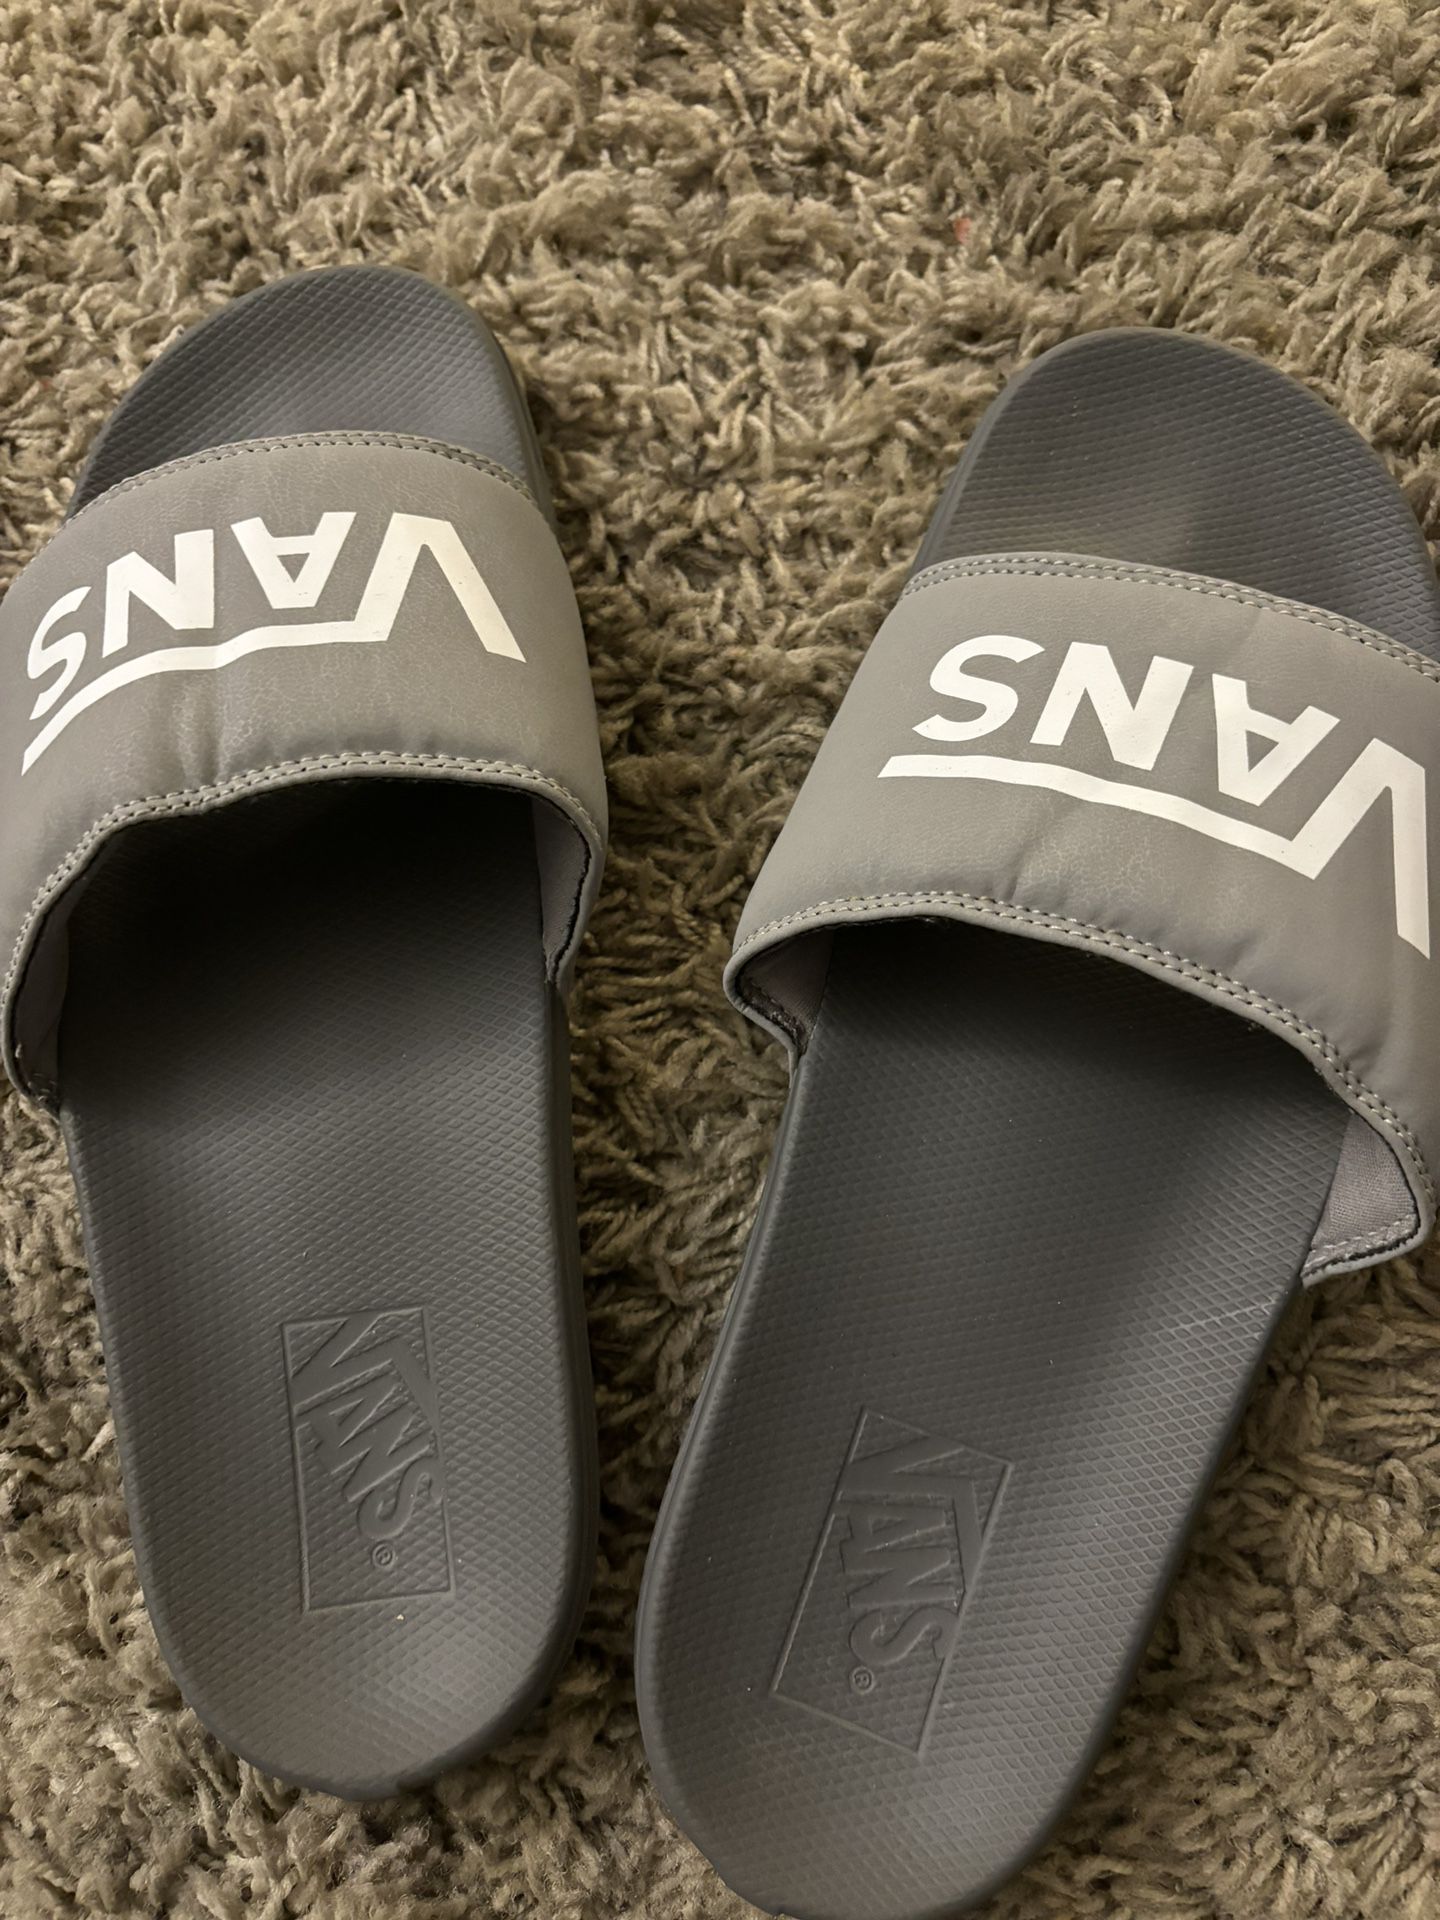 Vans Sandals Size 13